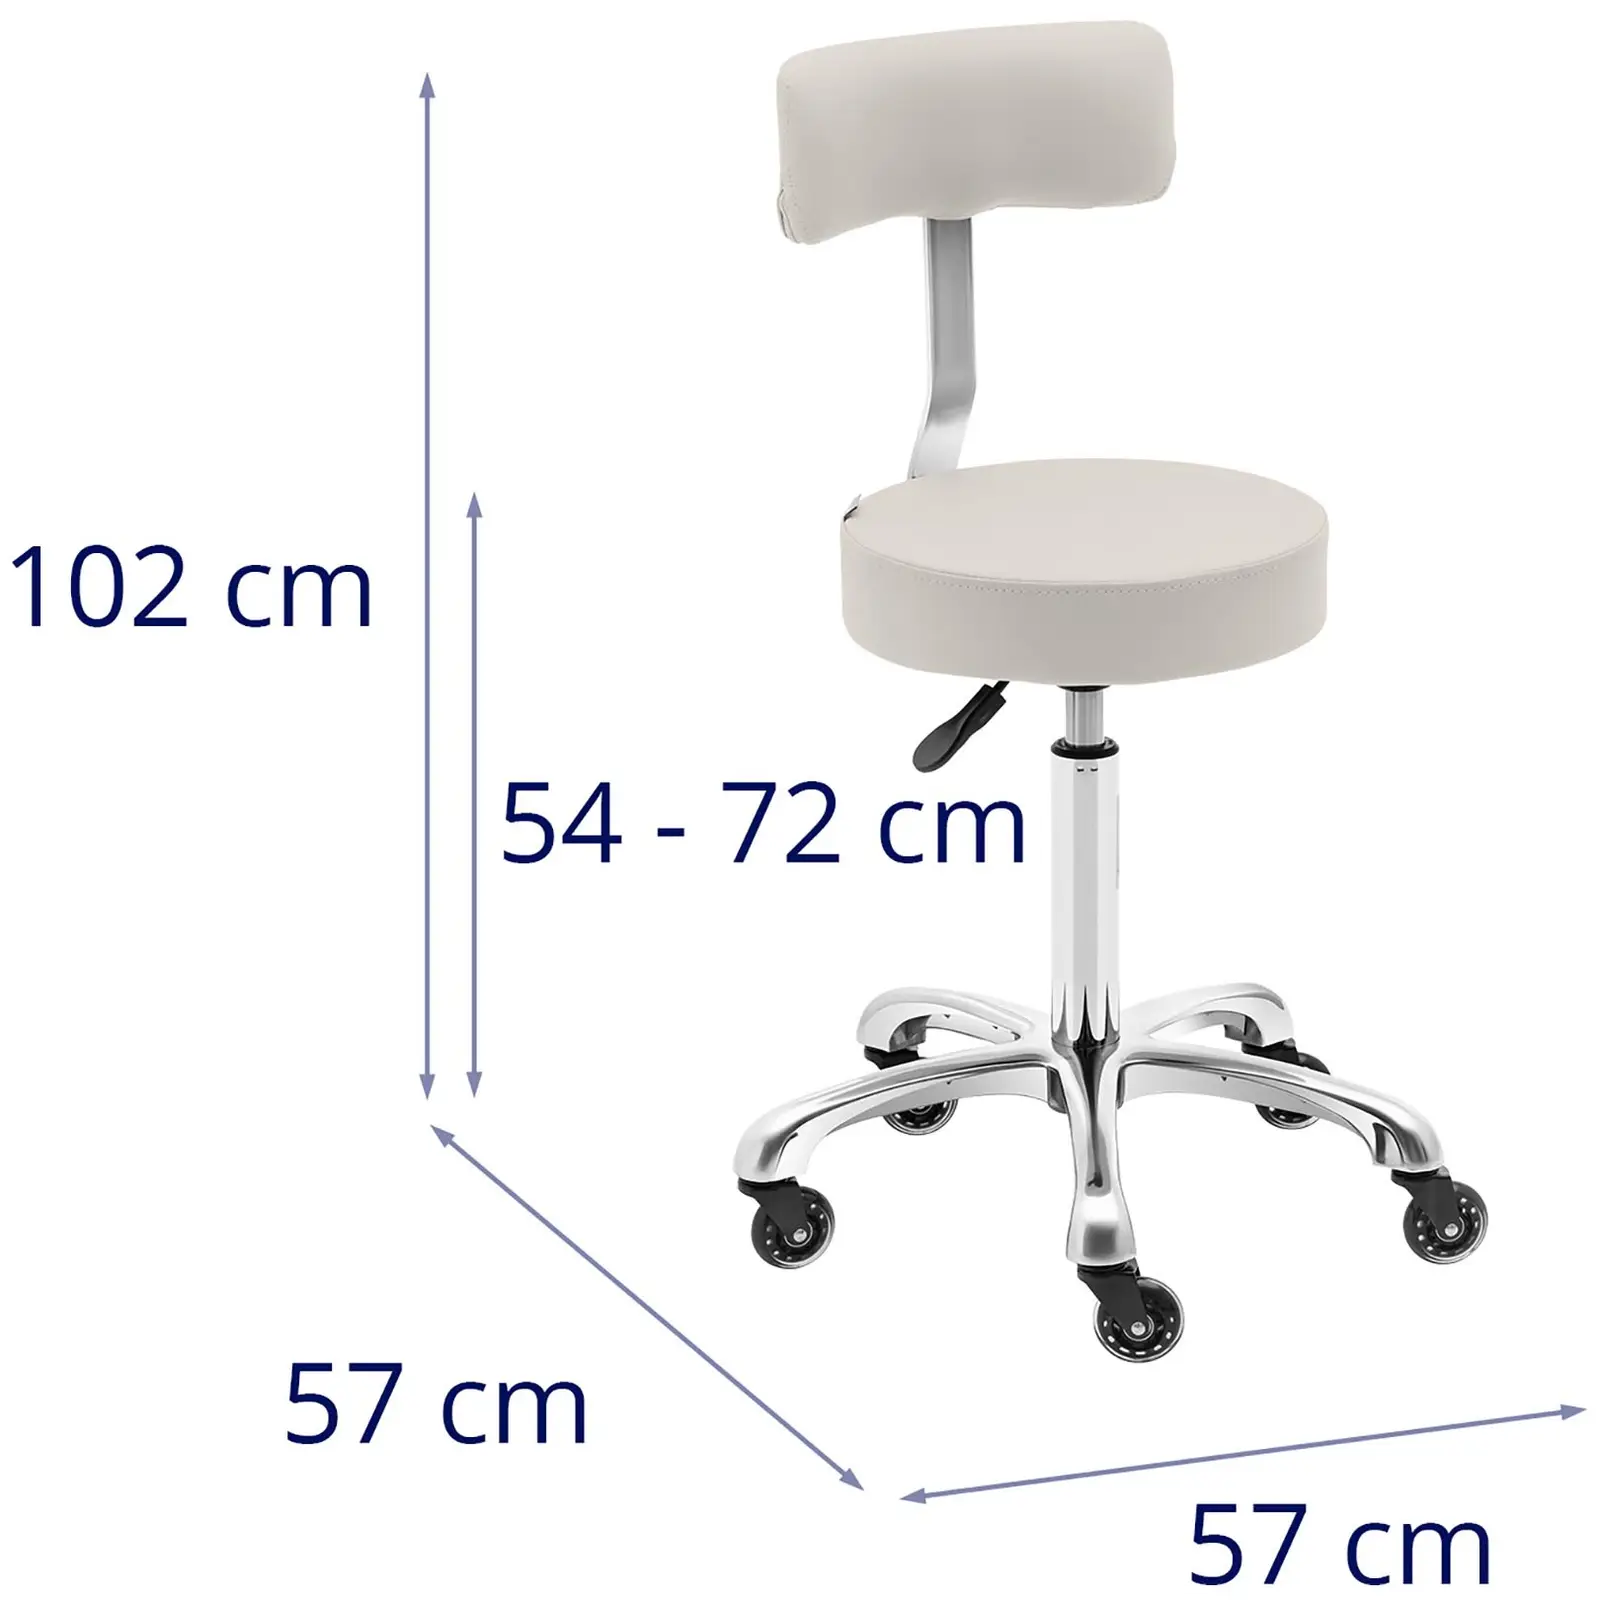 Cadeira para salão de beleza - 540 - 720 mm - bege